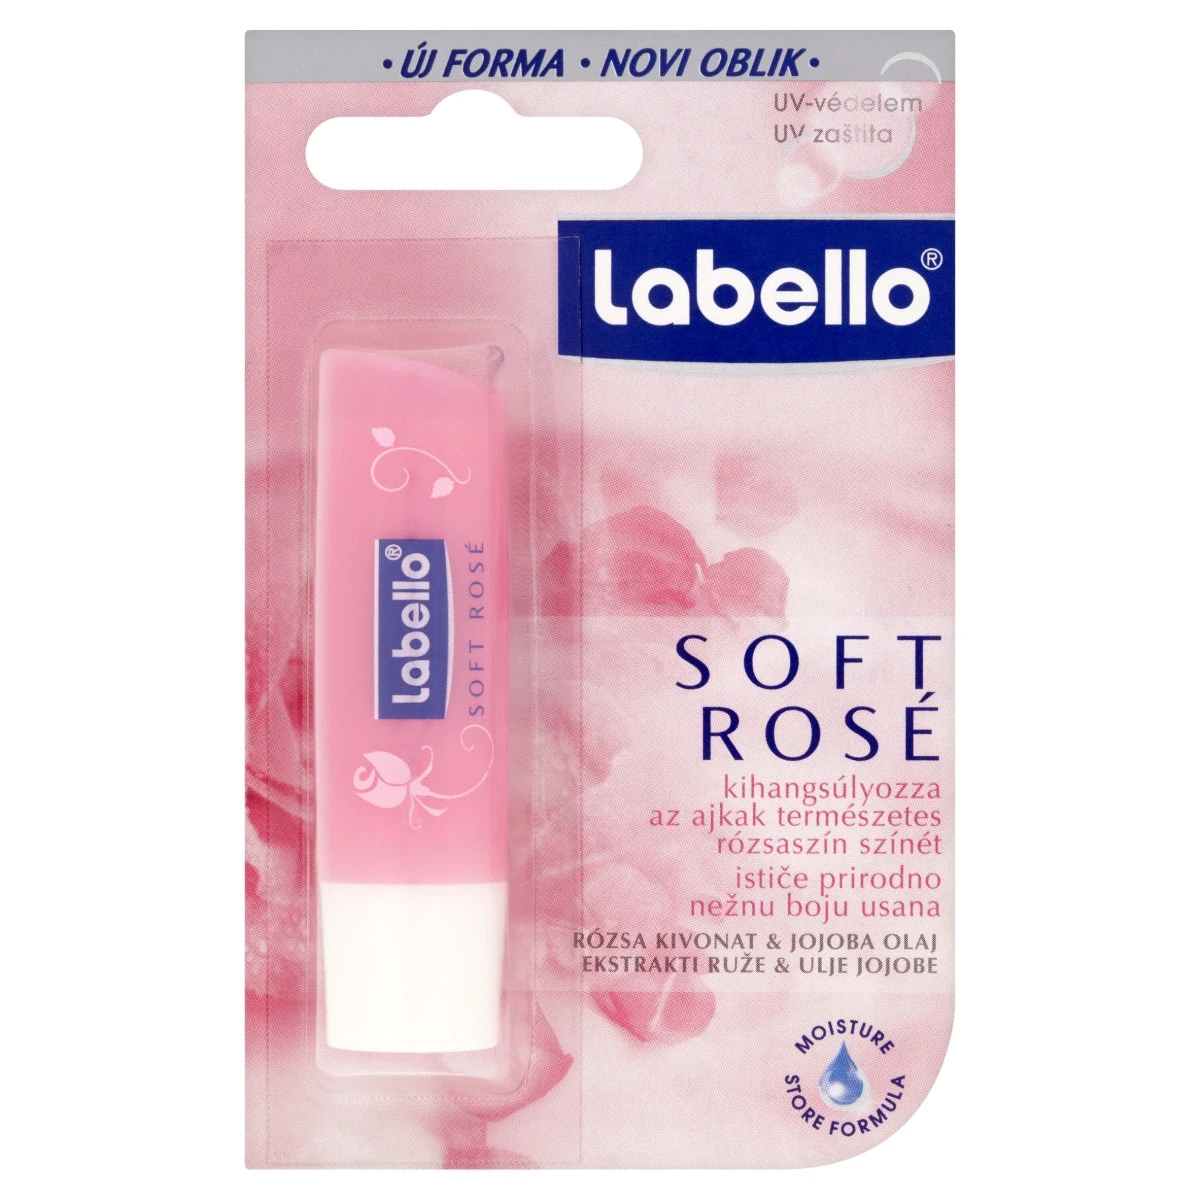 Labello Ajakápoló Soft Rosé, 4,8 g